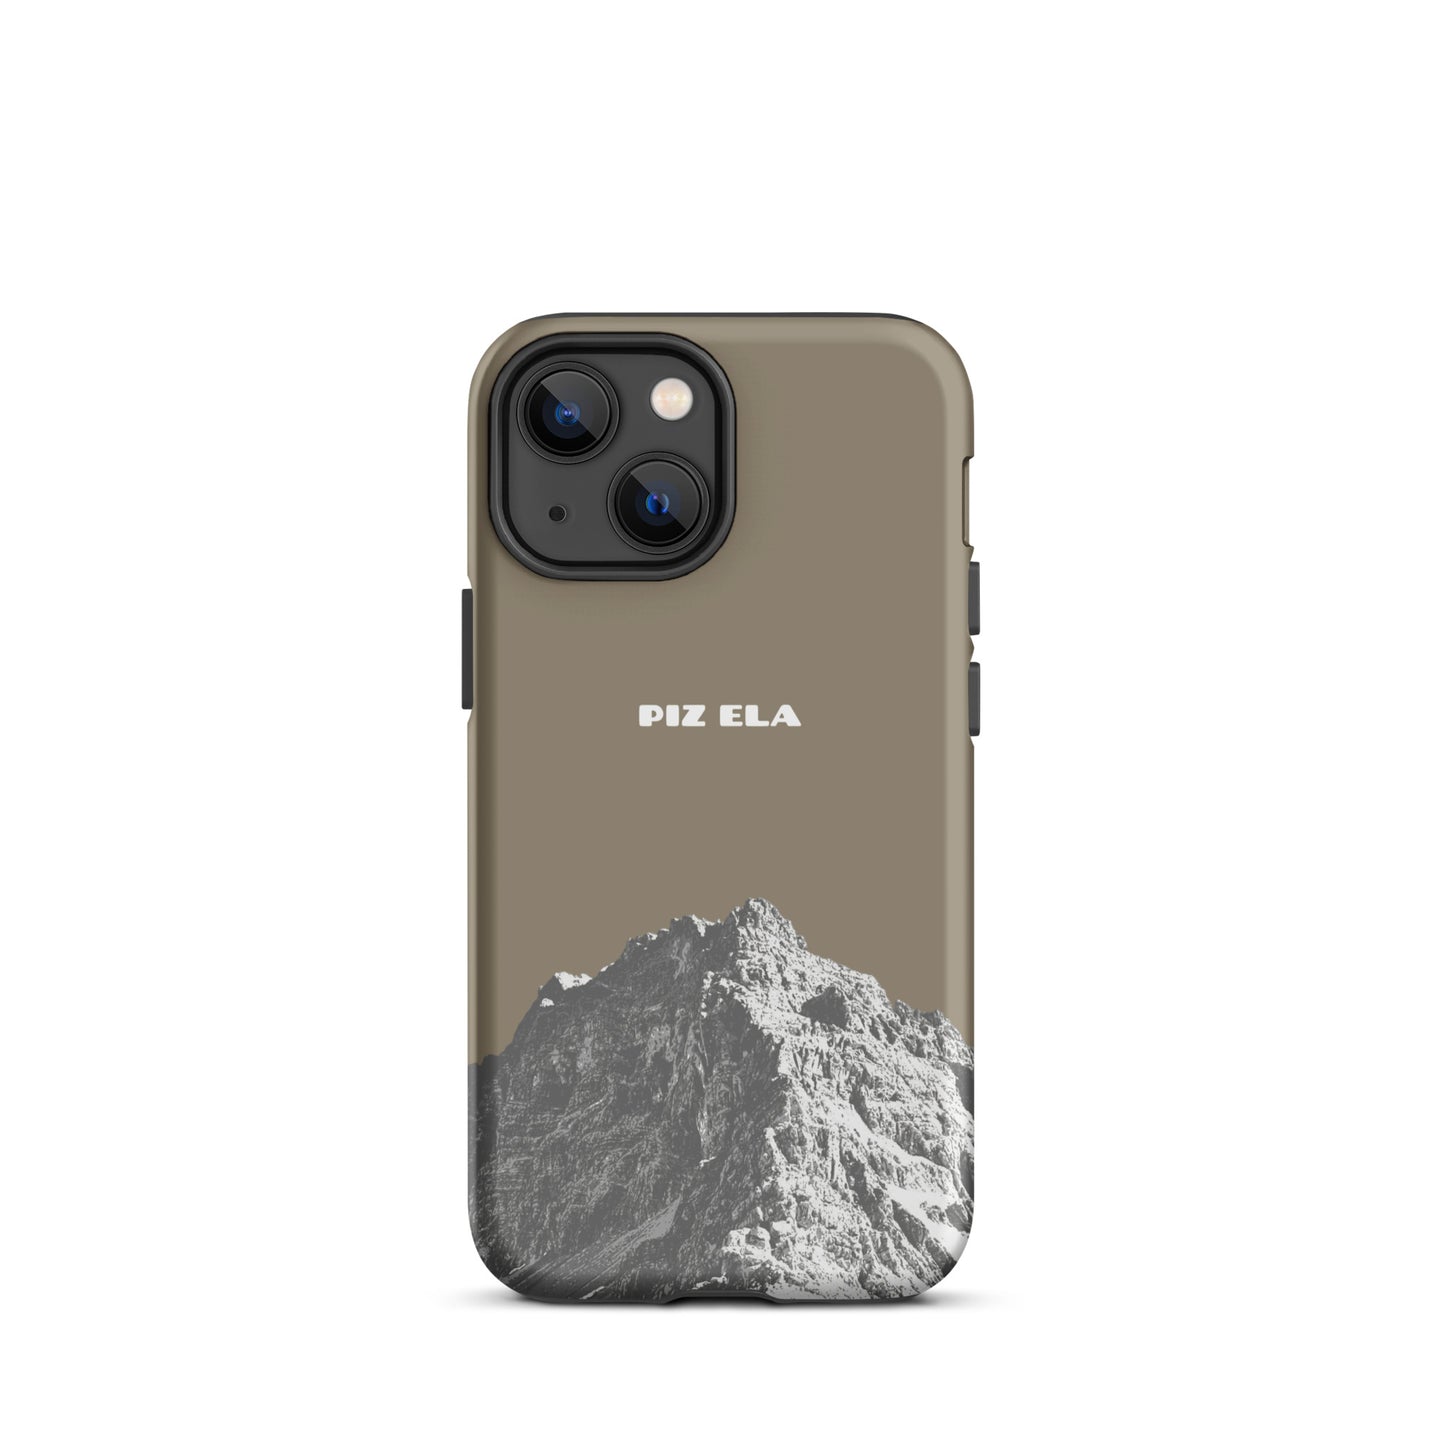 iPhone Case - Piz Ela - Graubraun